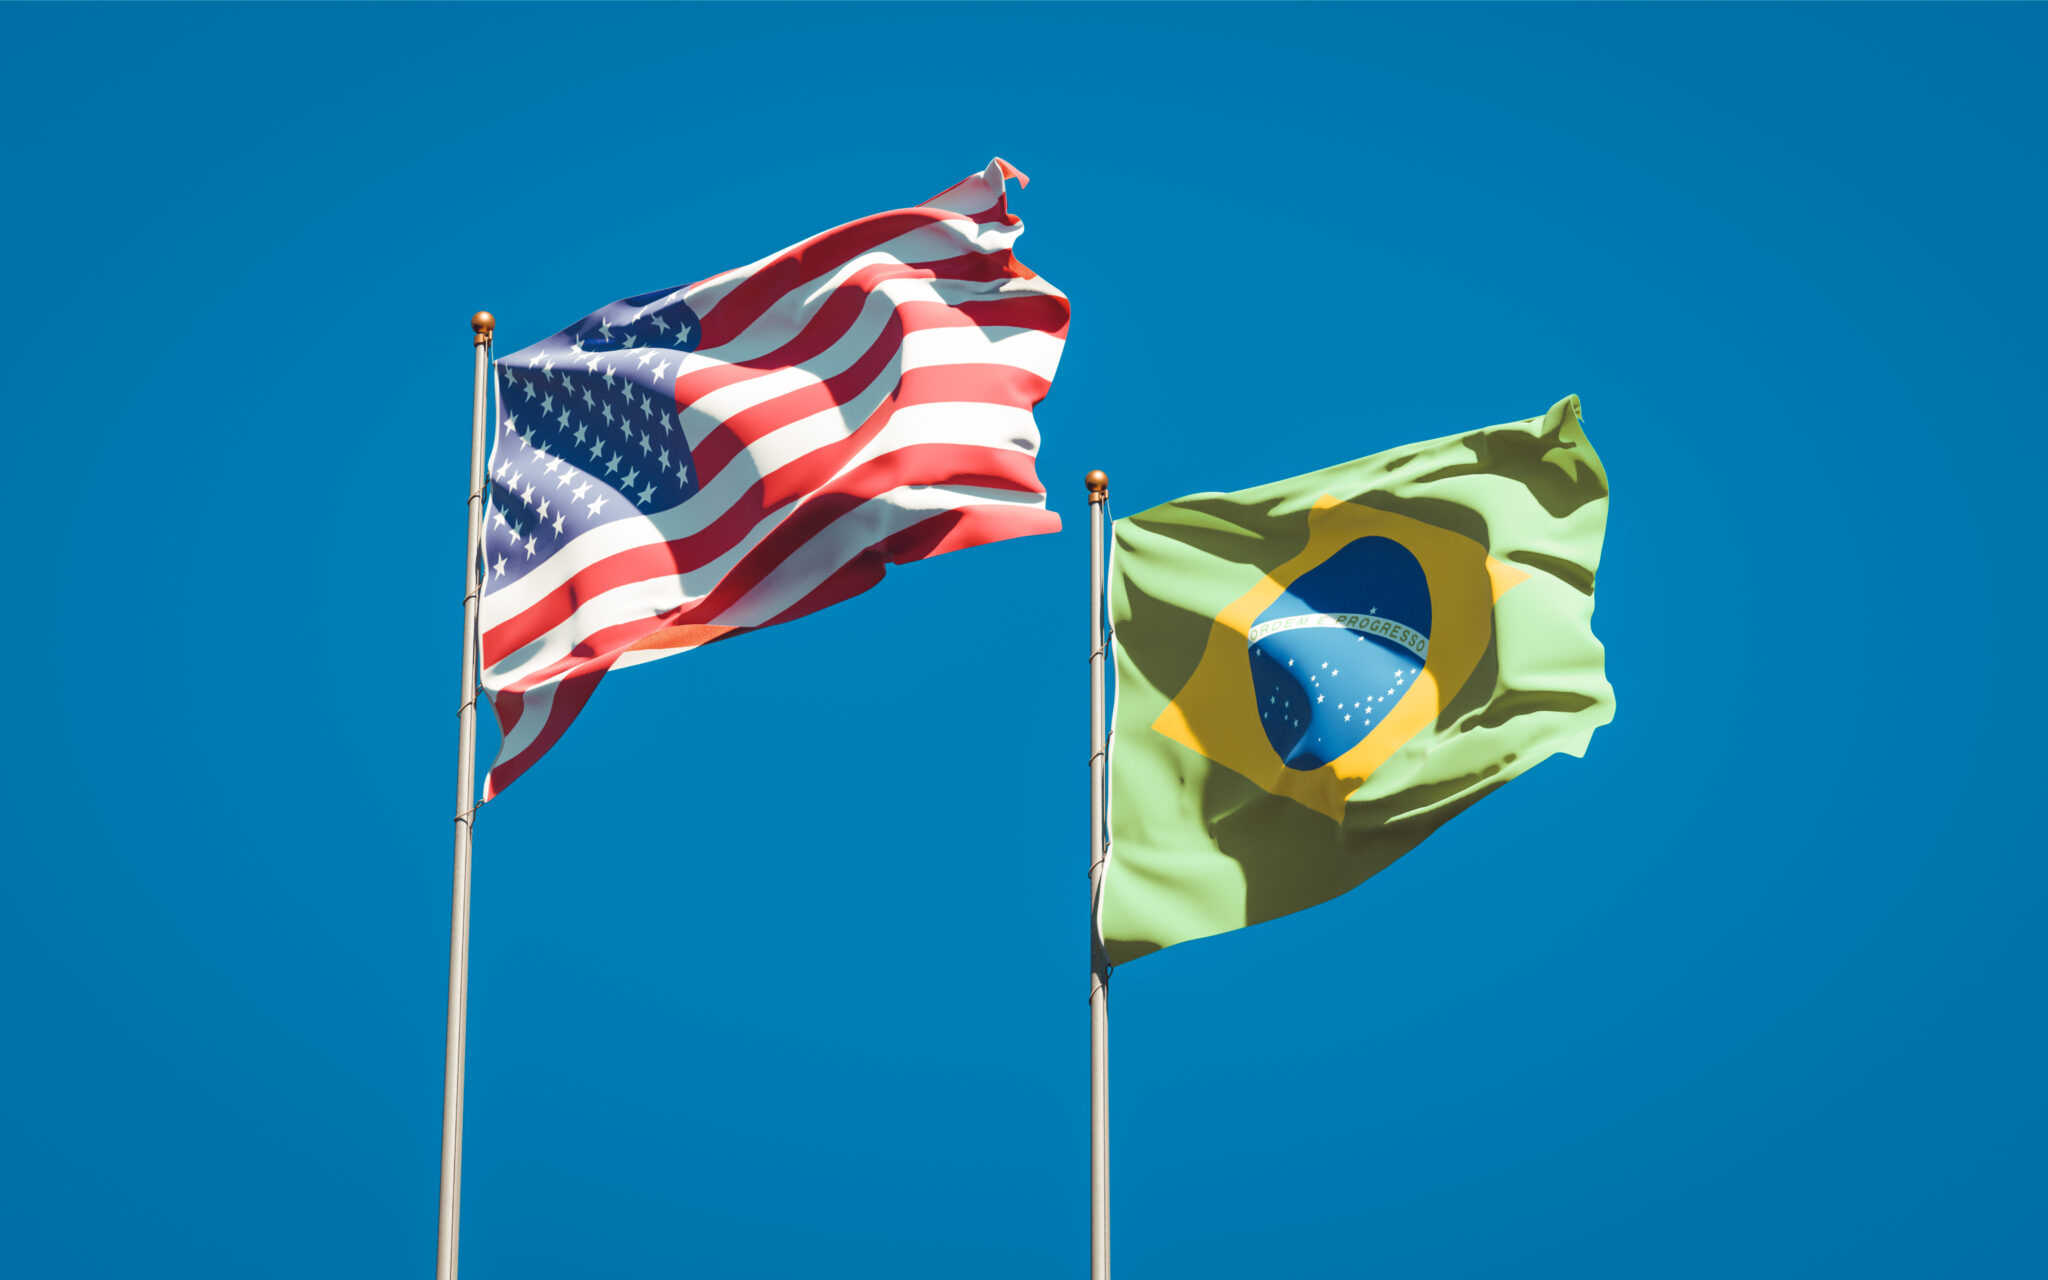 Bandeiras dos EUA e do Brasil, representando o mercado global